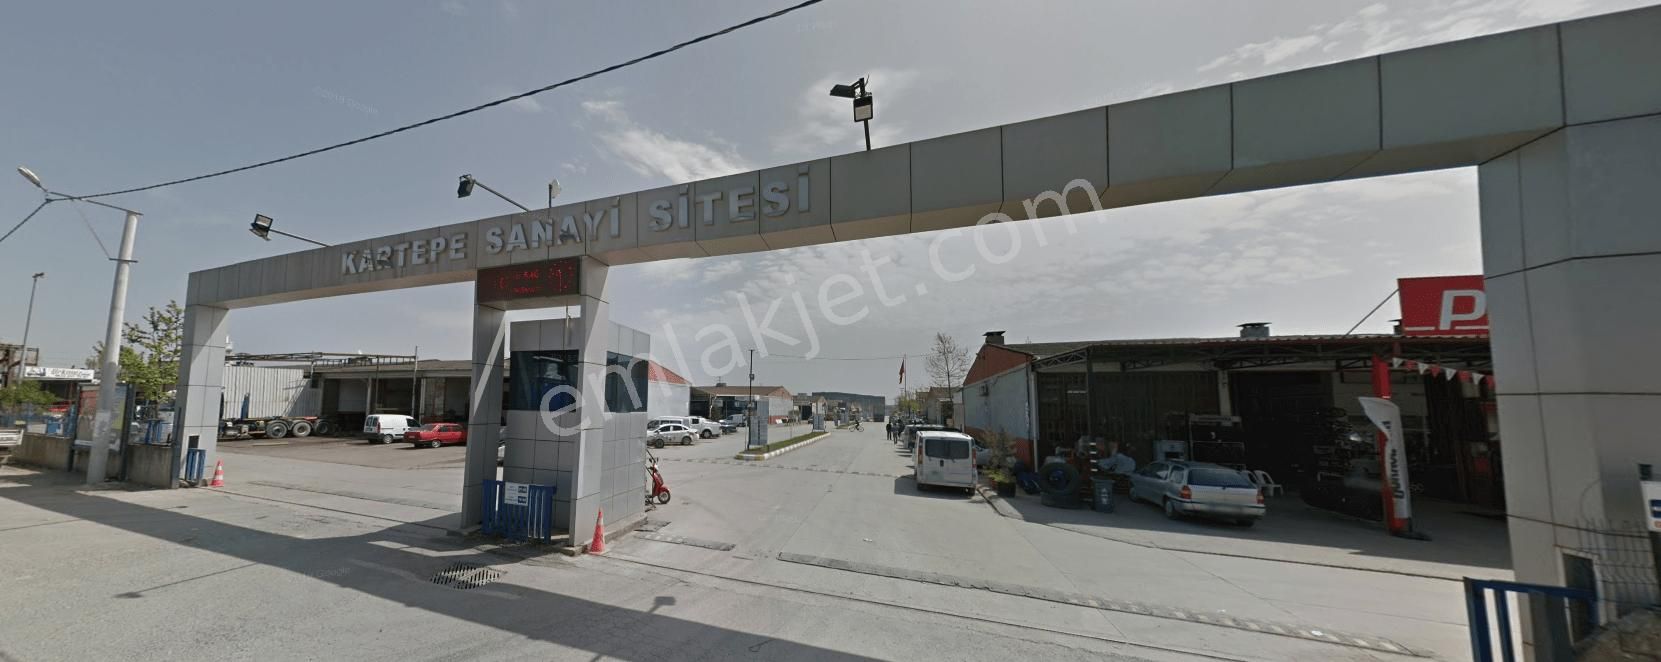 Kartepe İstasyon Satılık Dükkan & Mağaza  Köseköy Sanayi Sitesi Satılık 120 m2 dükkan